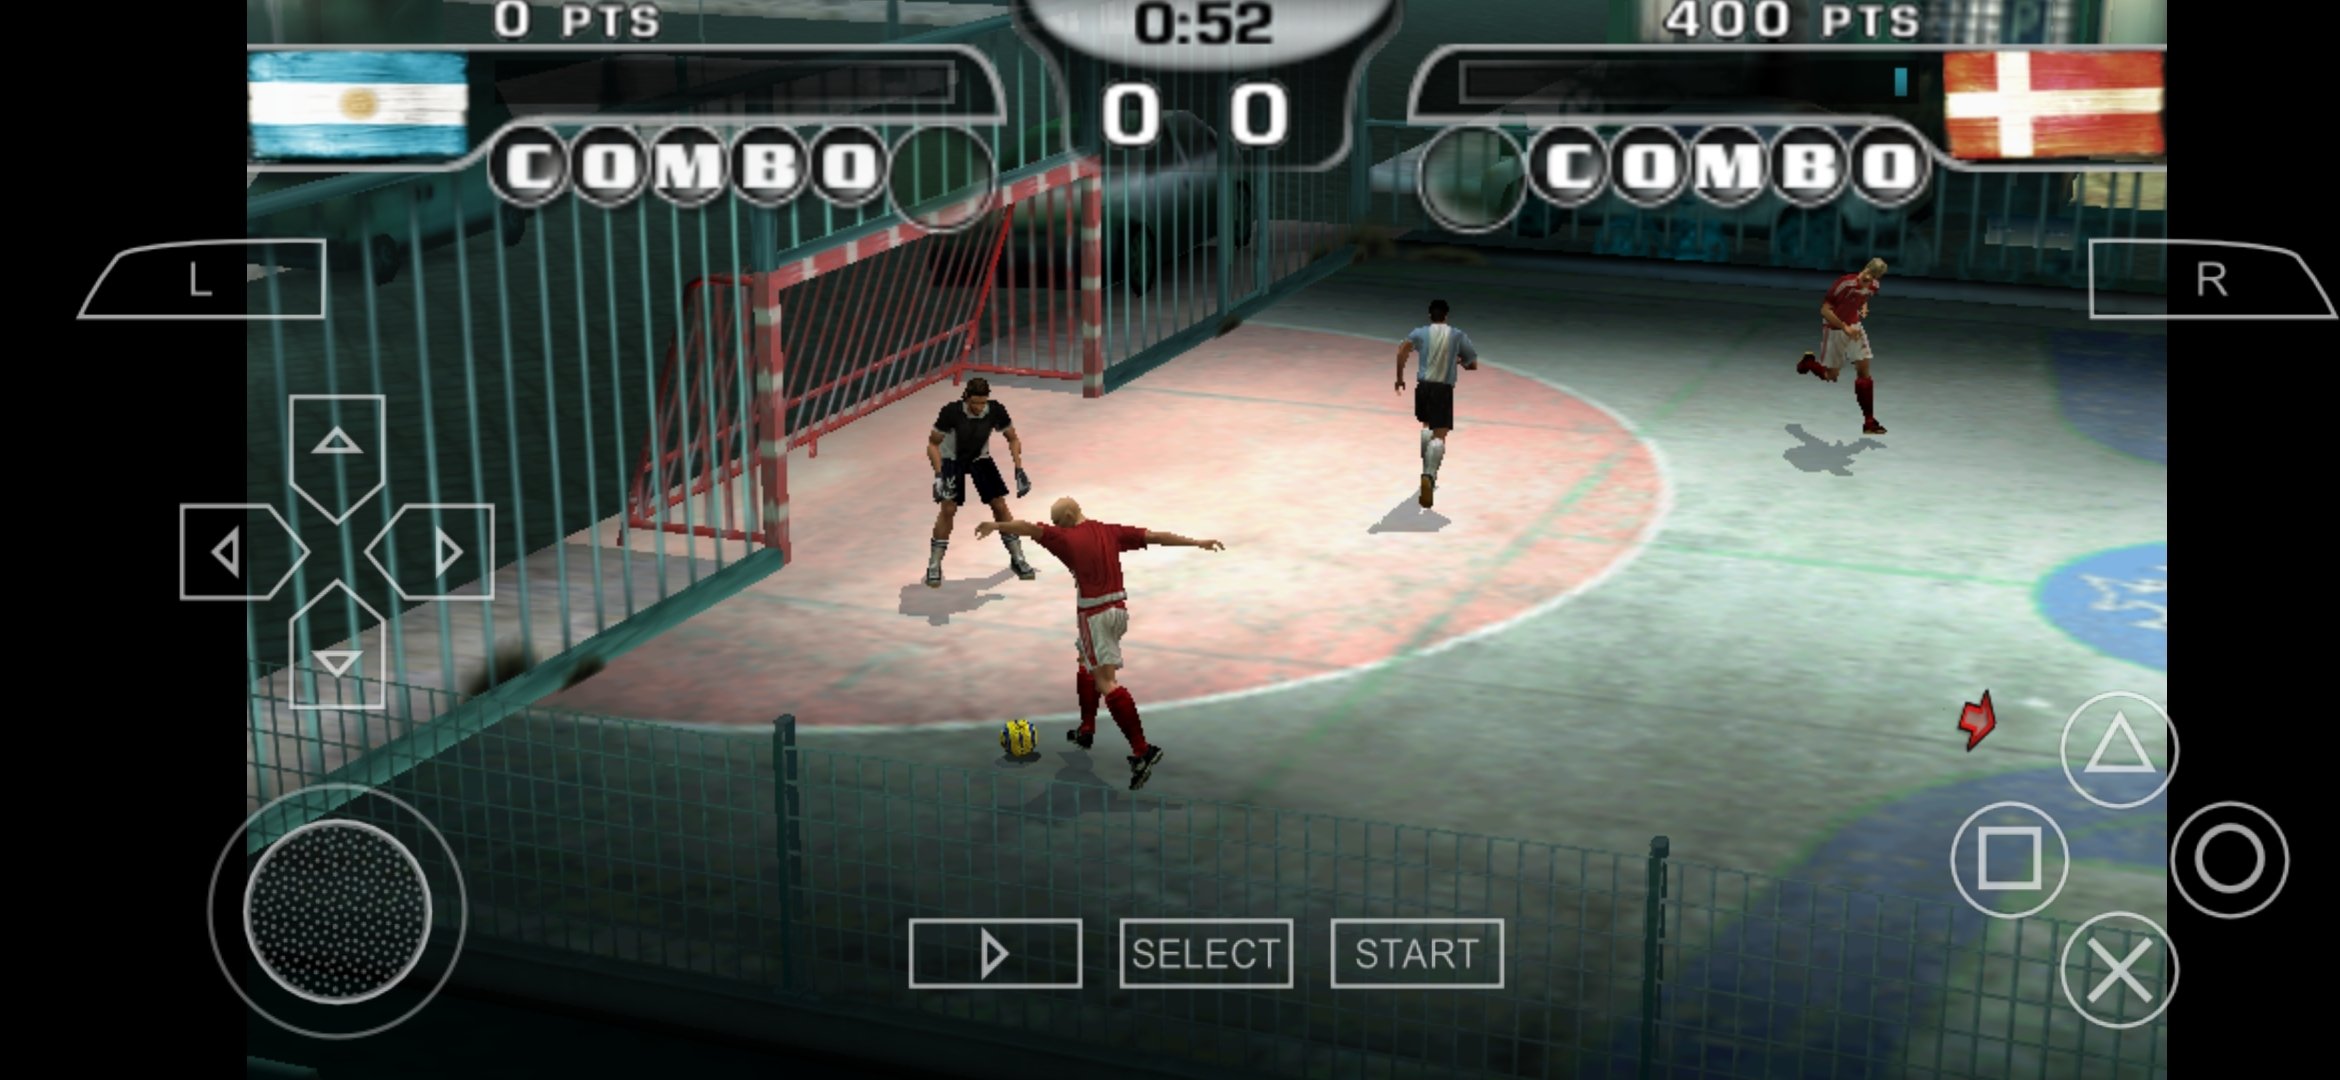 Street 2 Soccer World 3.3.1 - Скачать Для Android APK Бесплатно